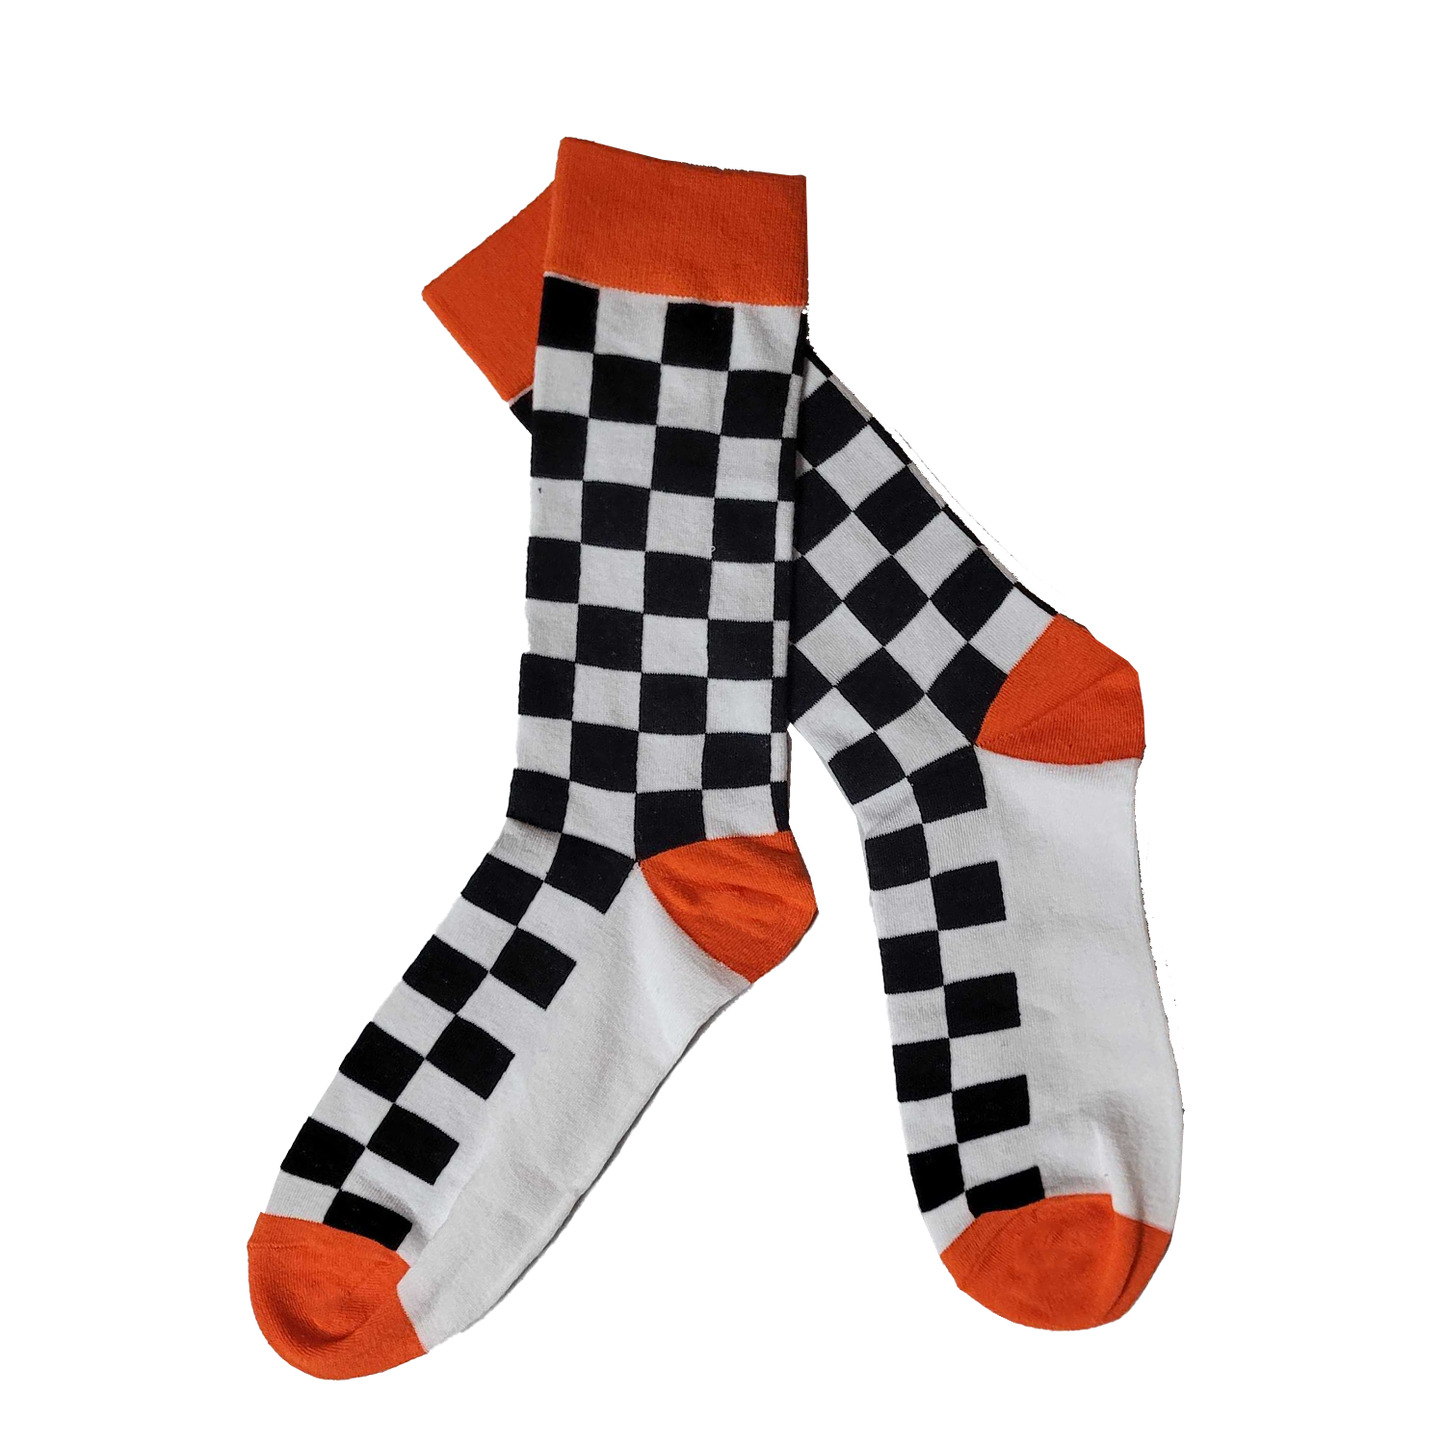 Bonk Checkered Socks